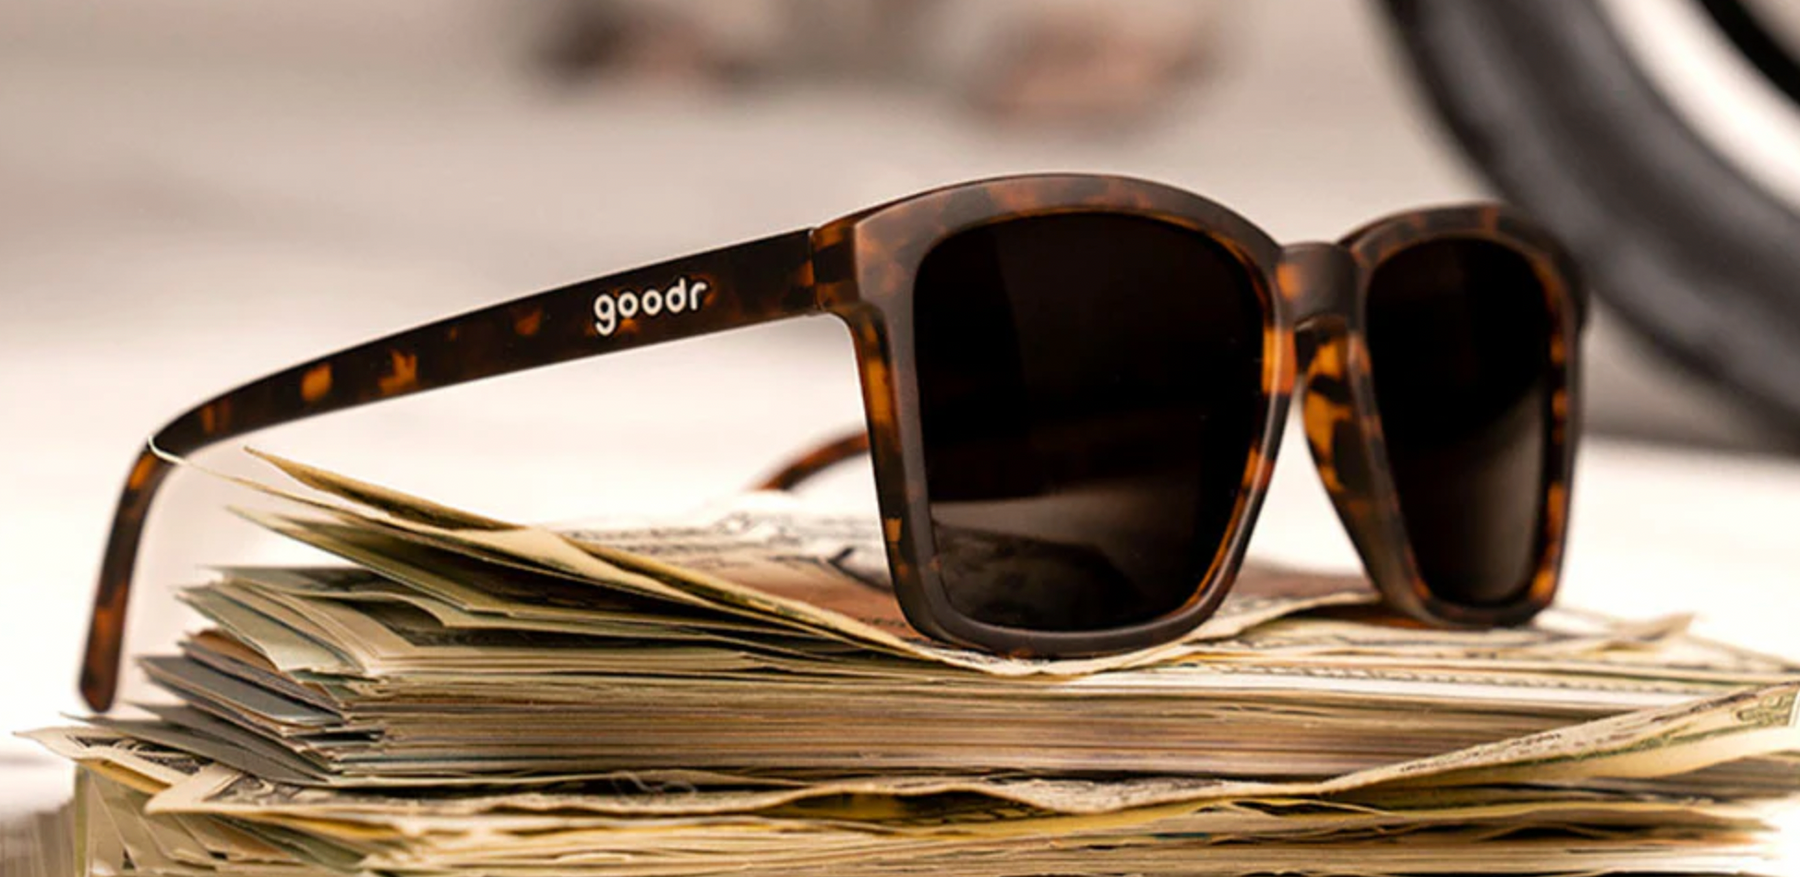 Goodr LFG Sunglasses (Smaller Is BALLER)